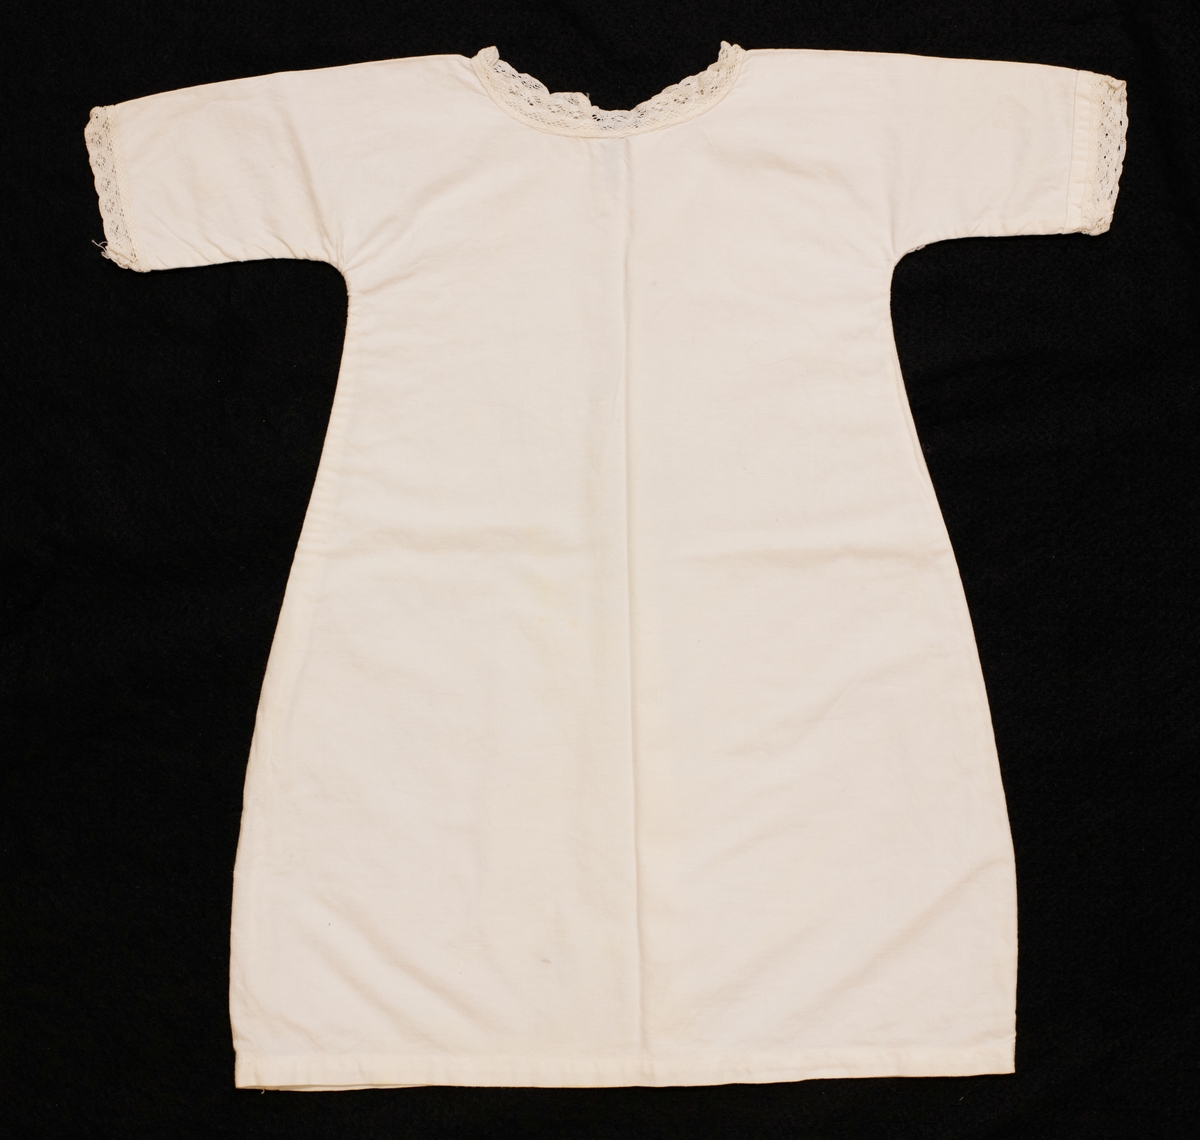 Underklänningen har spets kring ärmar och hals.
VM 15 380:1 - VM 15 384 är inköpta på Lions Clubs auktion för 25 kr.